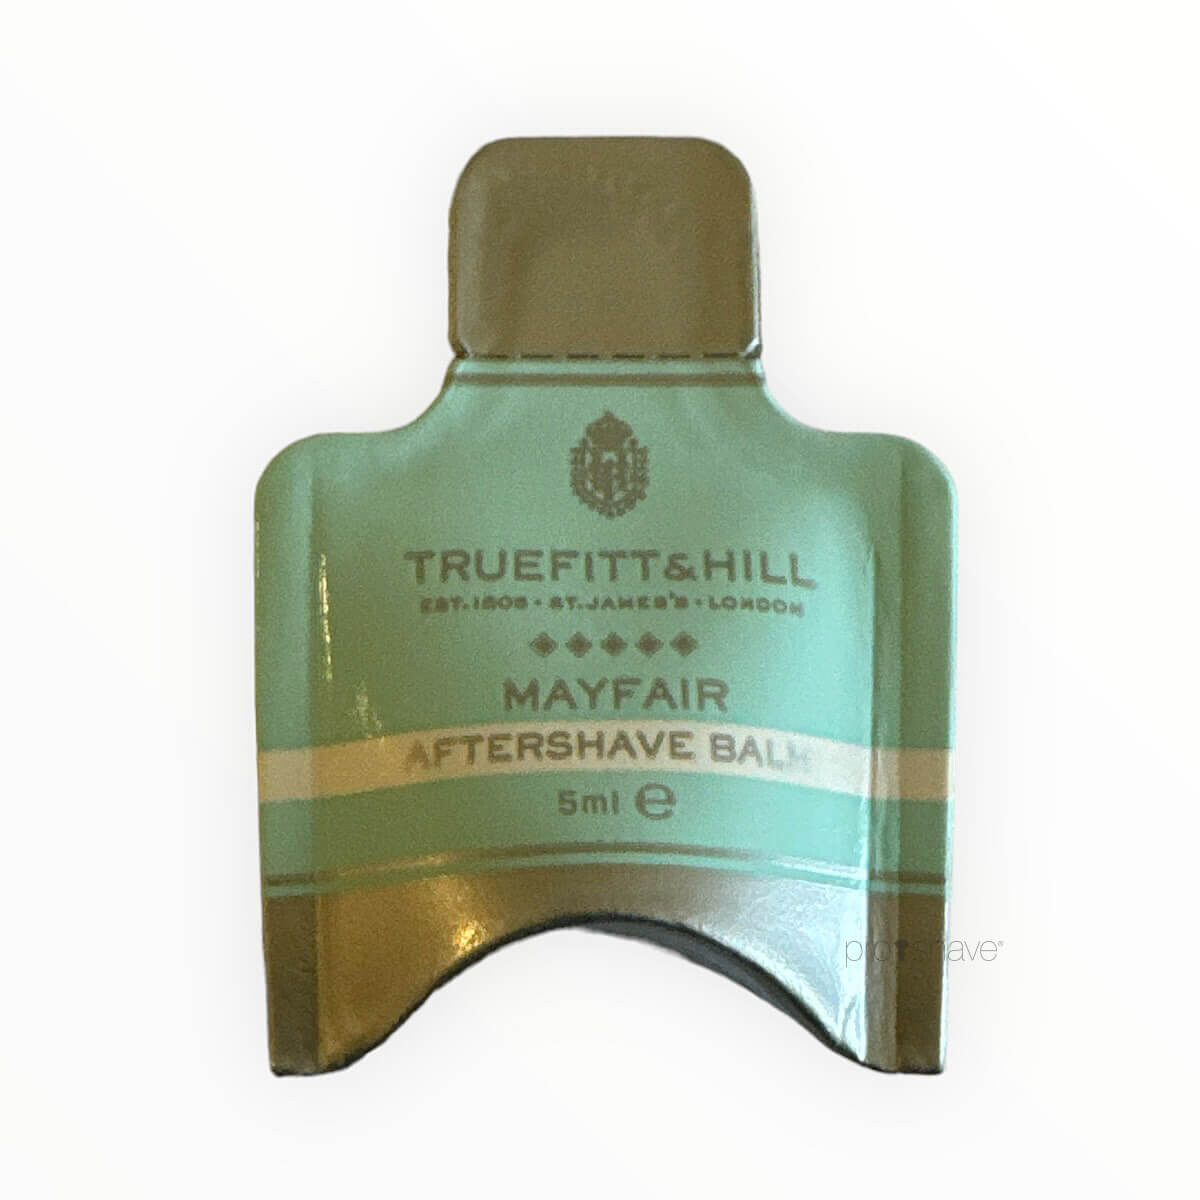 Truefitt & Hill Mayfair Aftershave Balm Sample Pack, 5 ml.